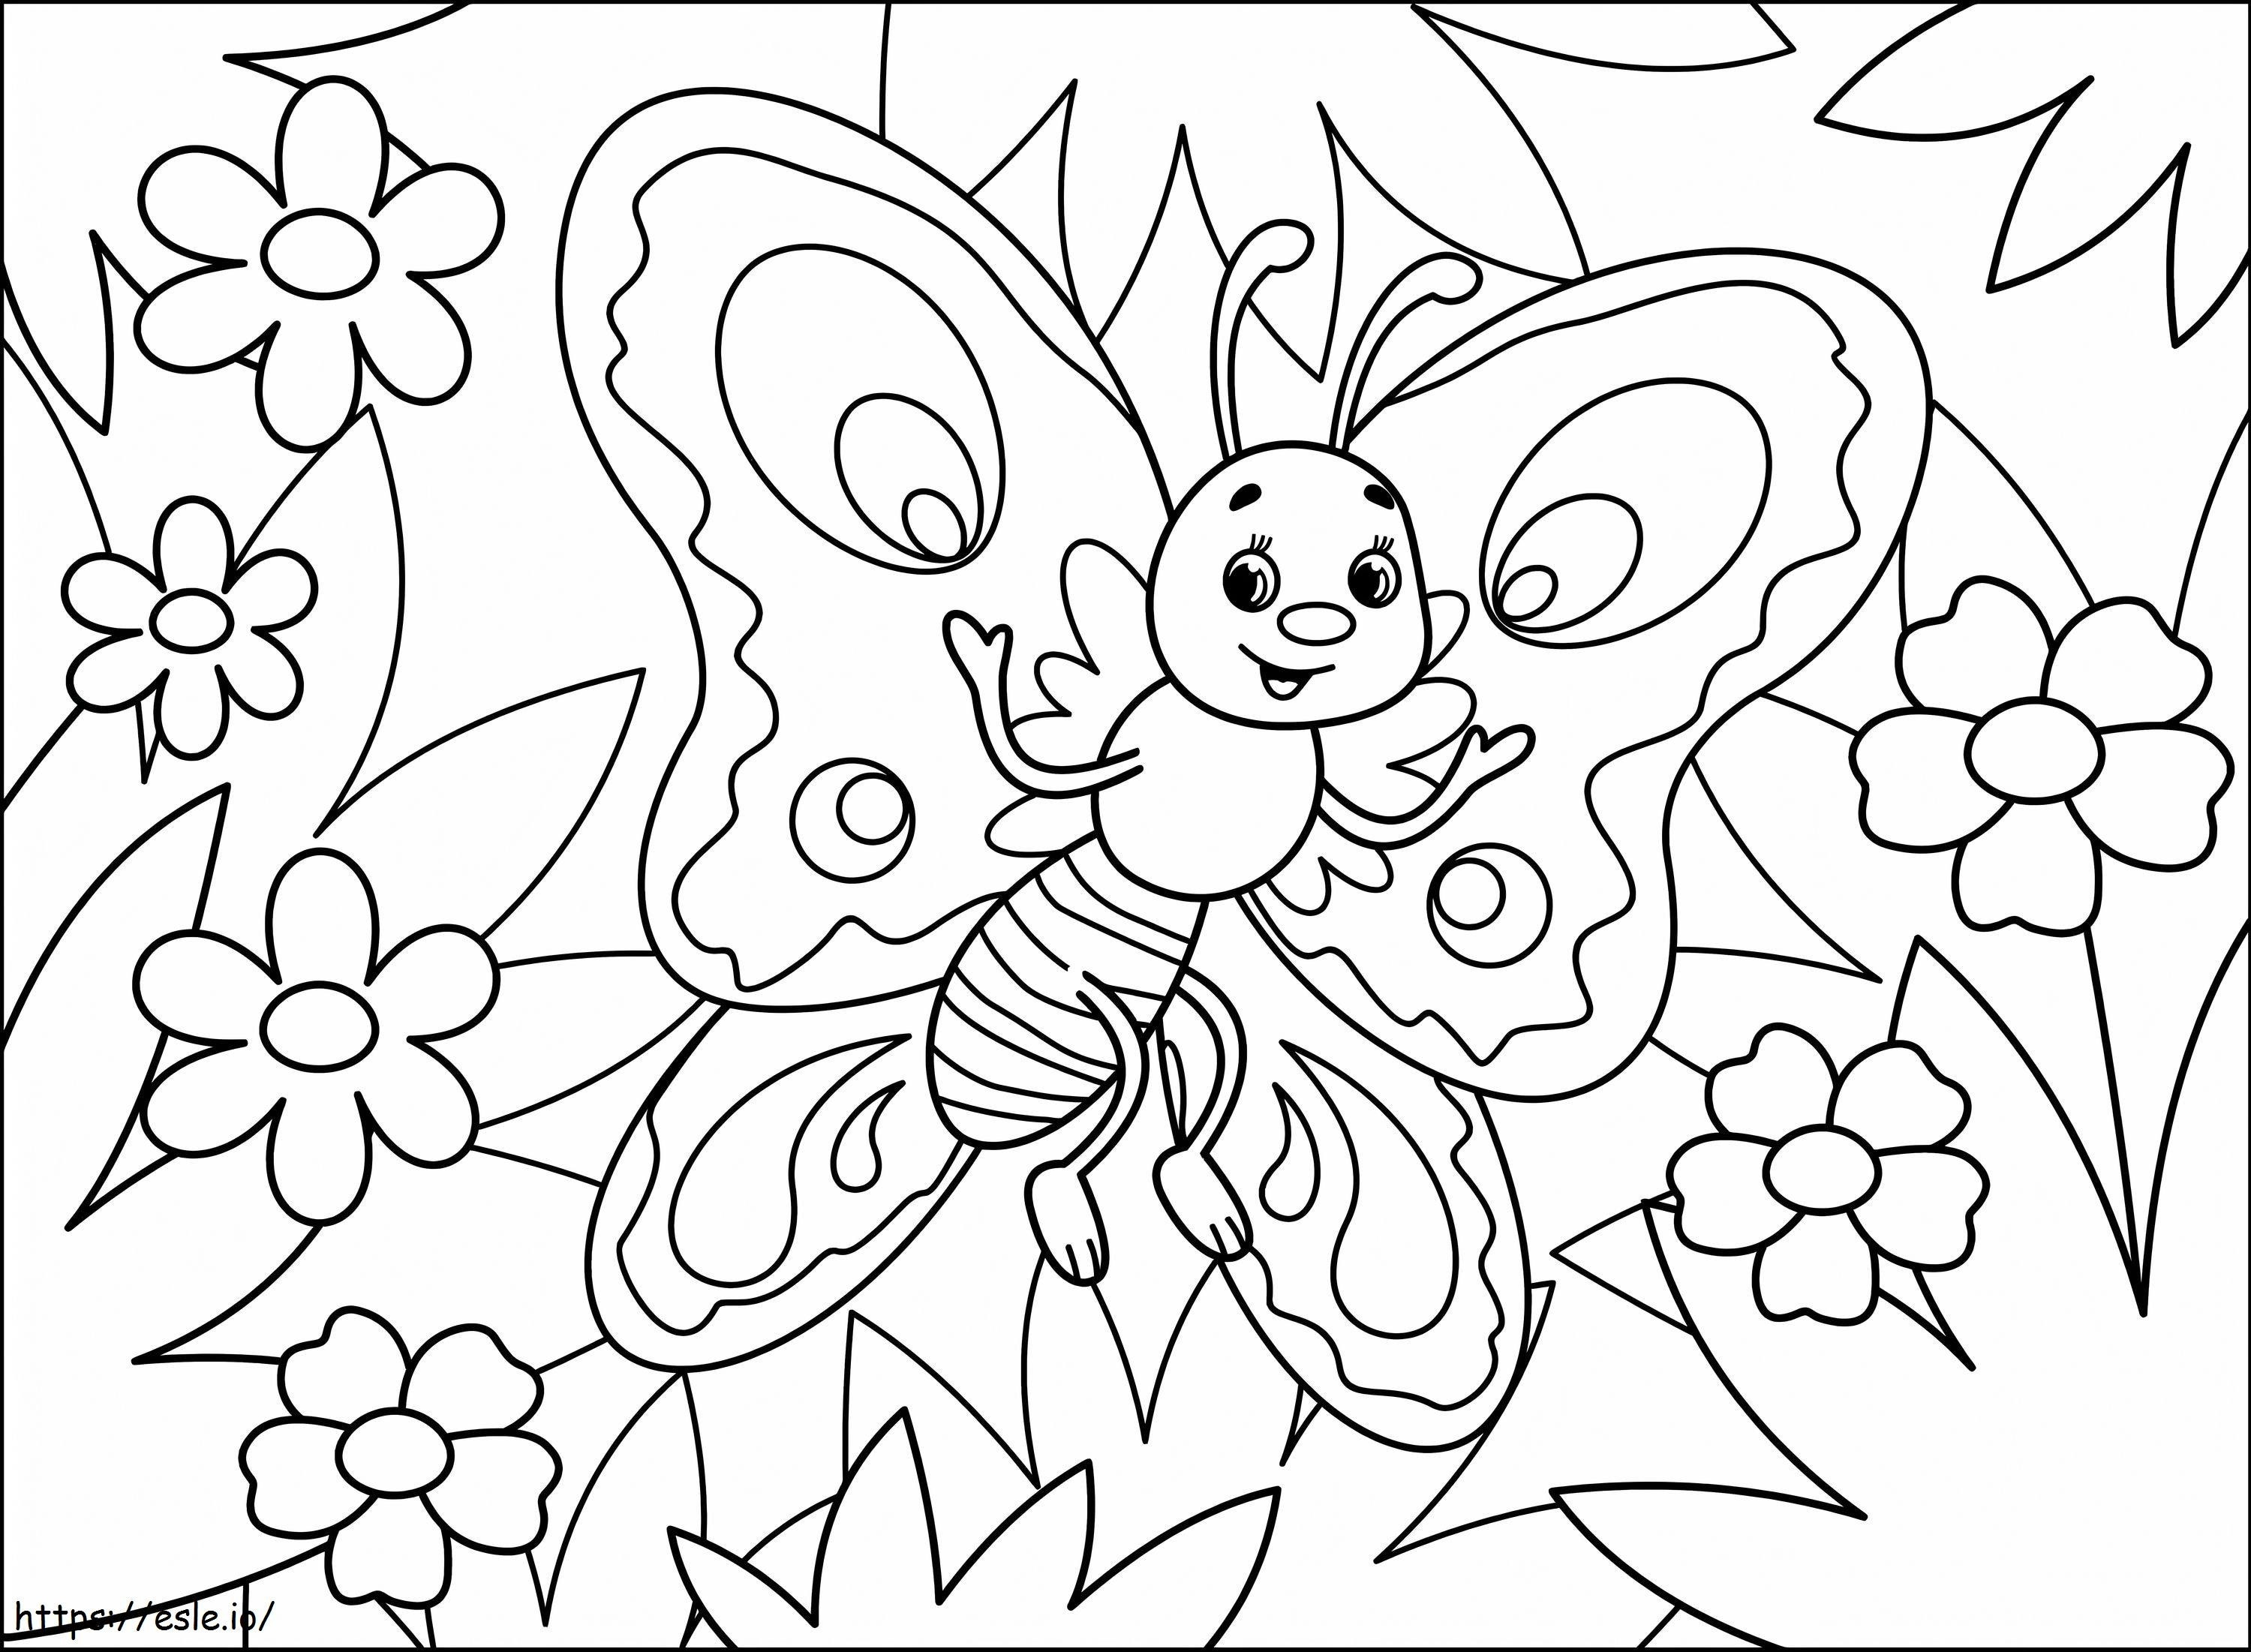 Farfalla del fumetto da colorare